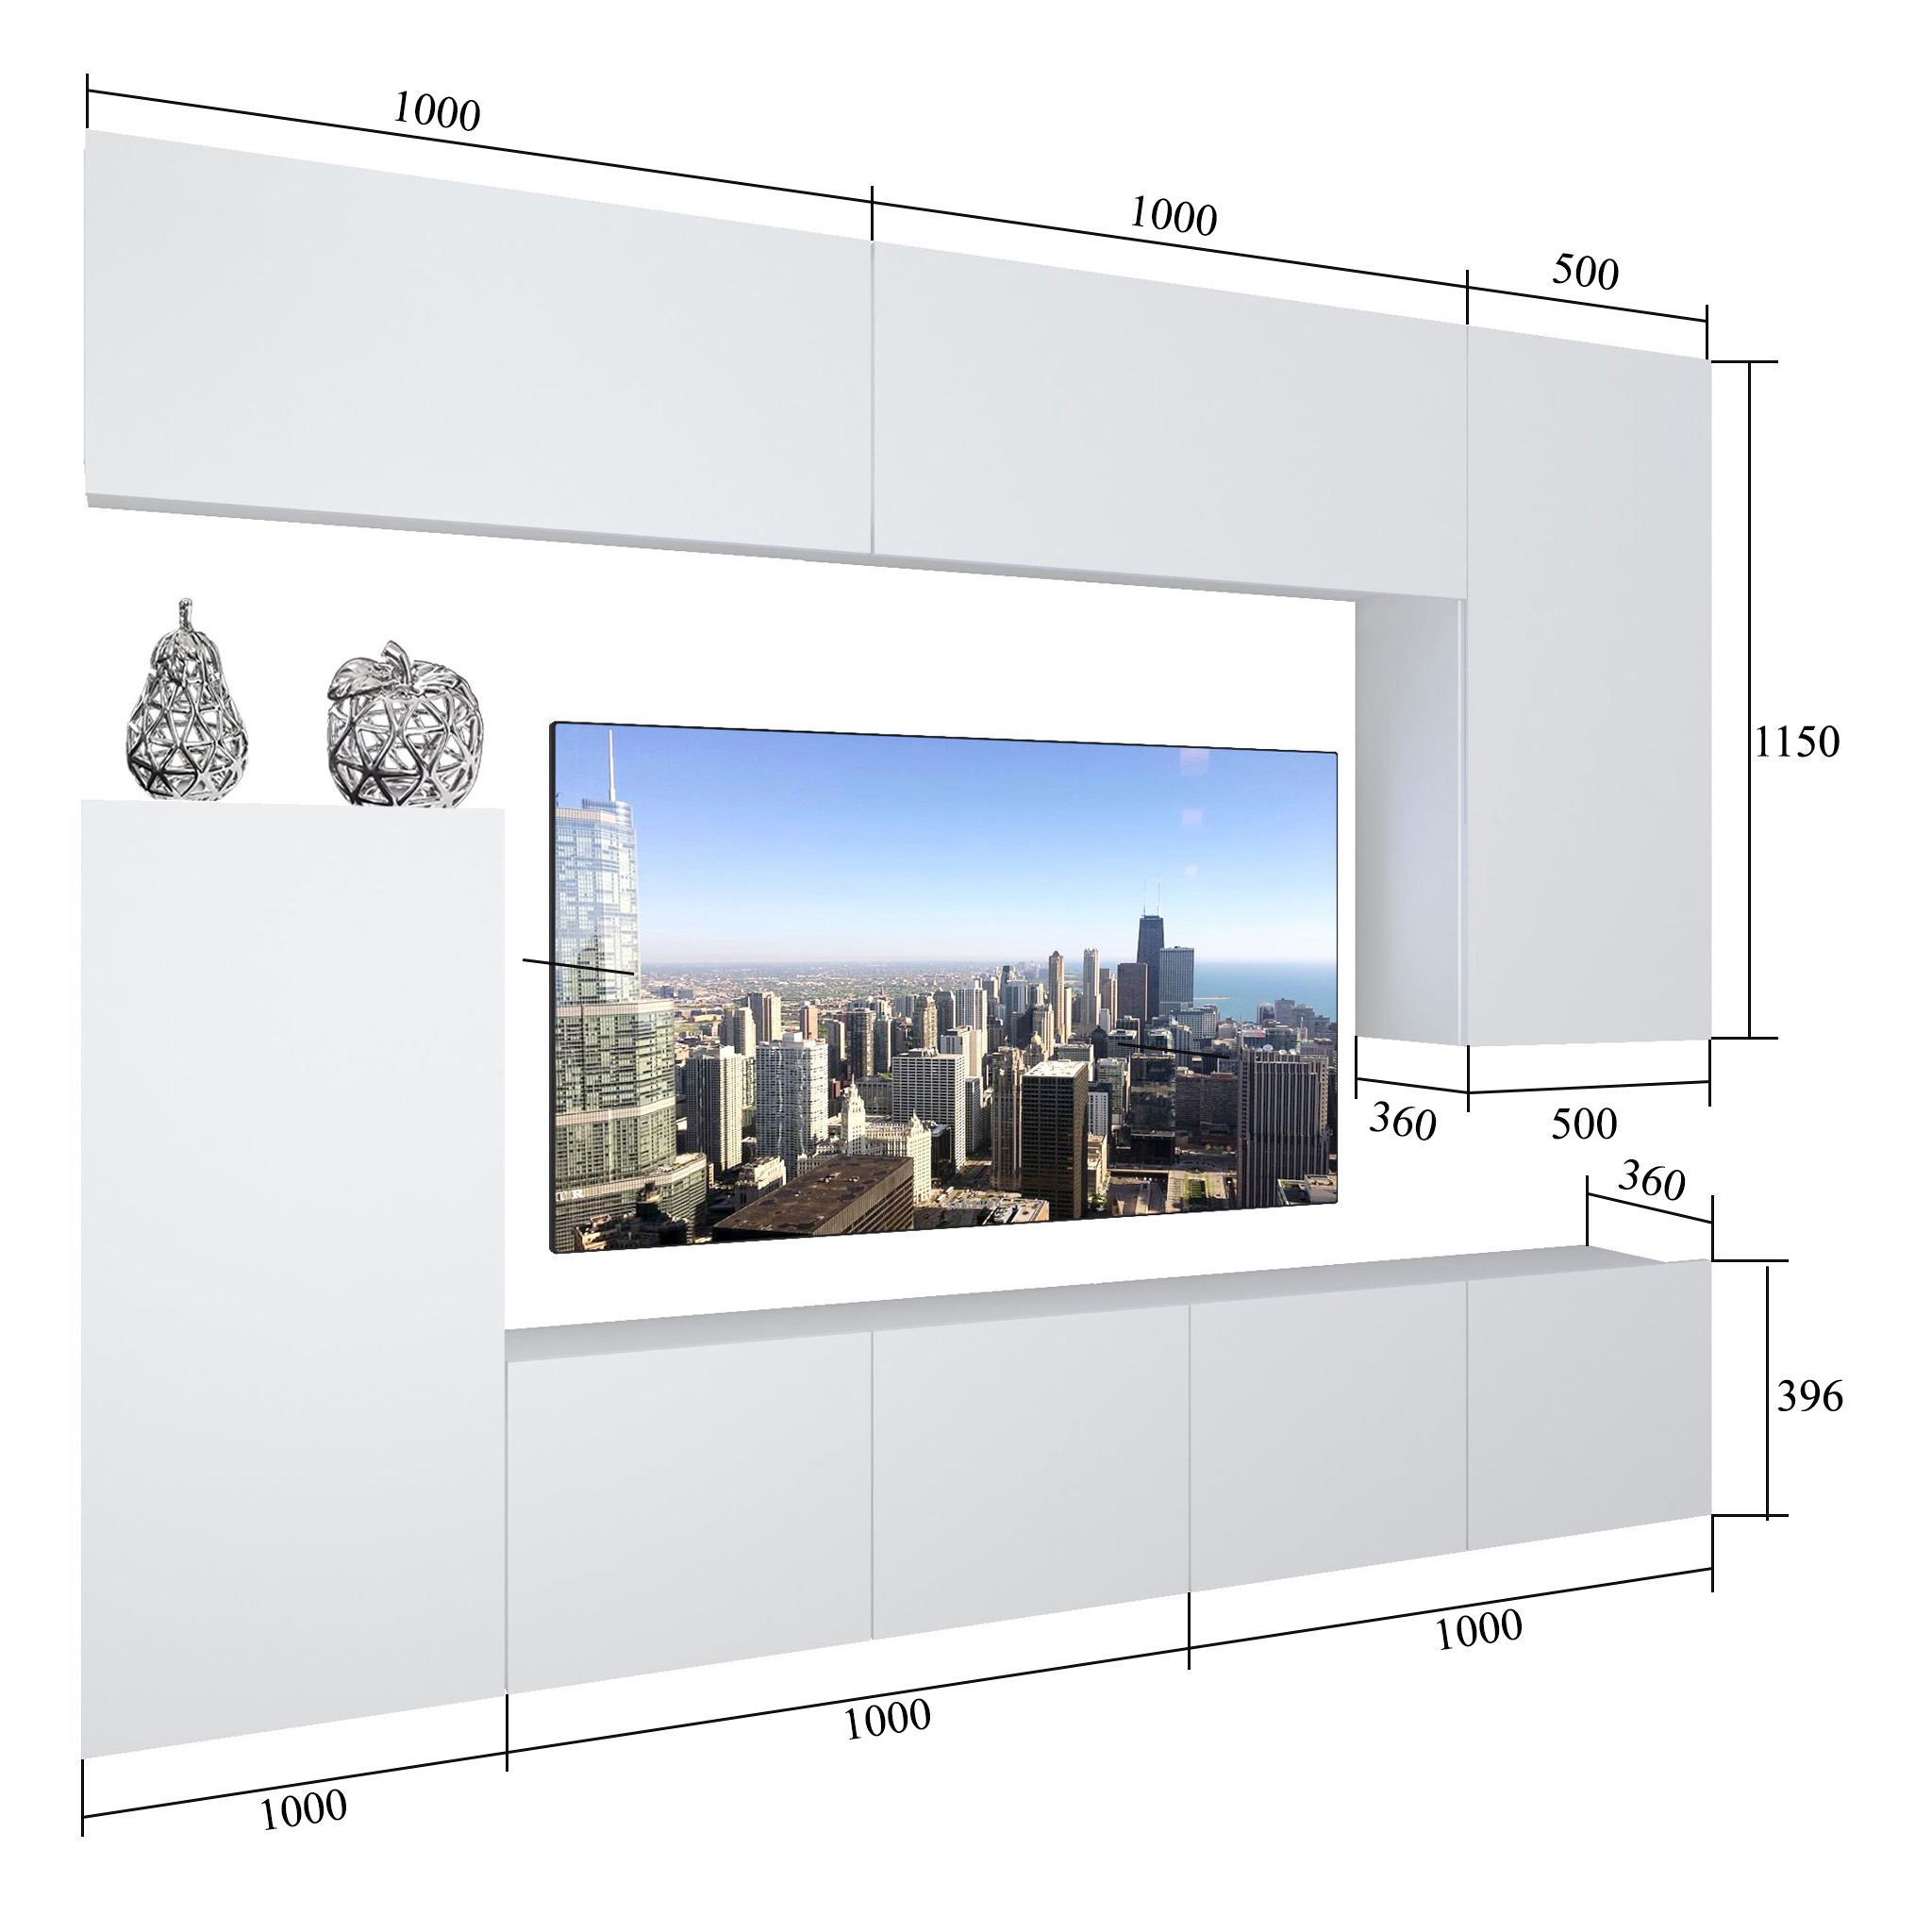 Obývací stěna Belini Premium Full Version  šedý antracit Glamour Wood + LED osvětlení Nexum 128 Výrobce
